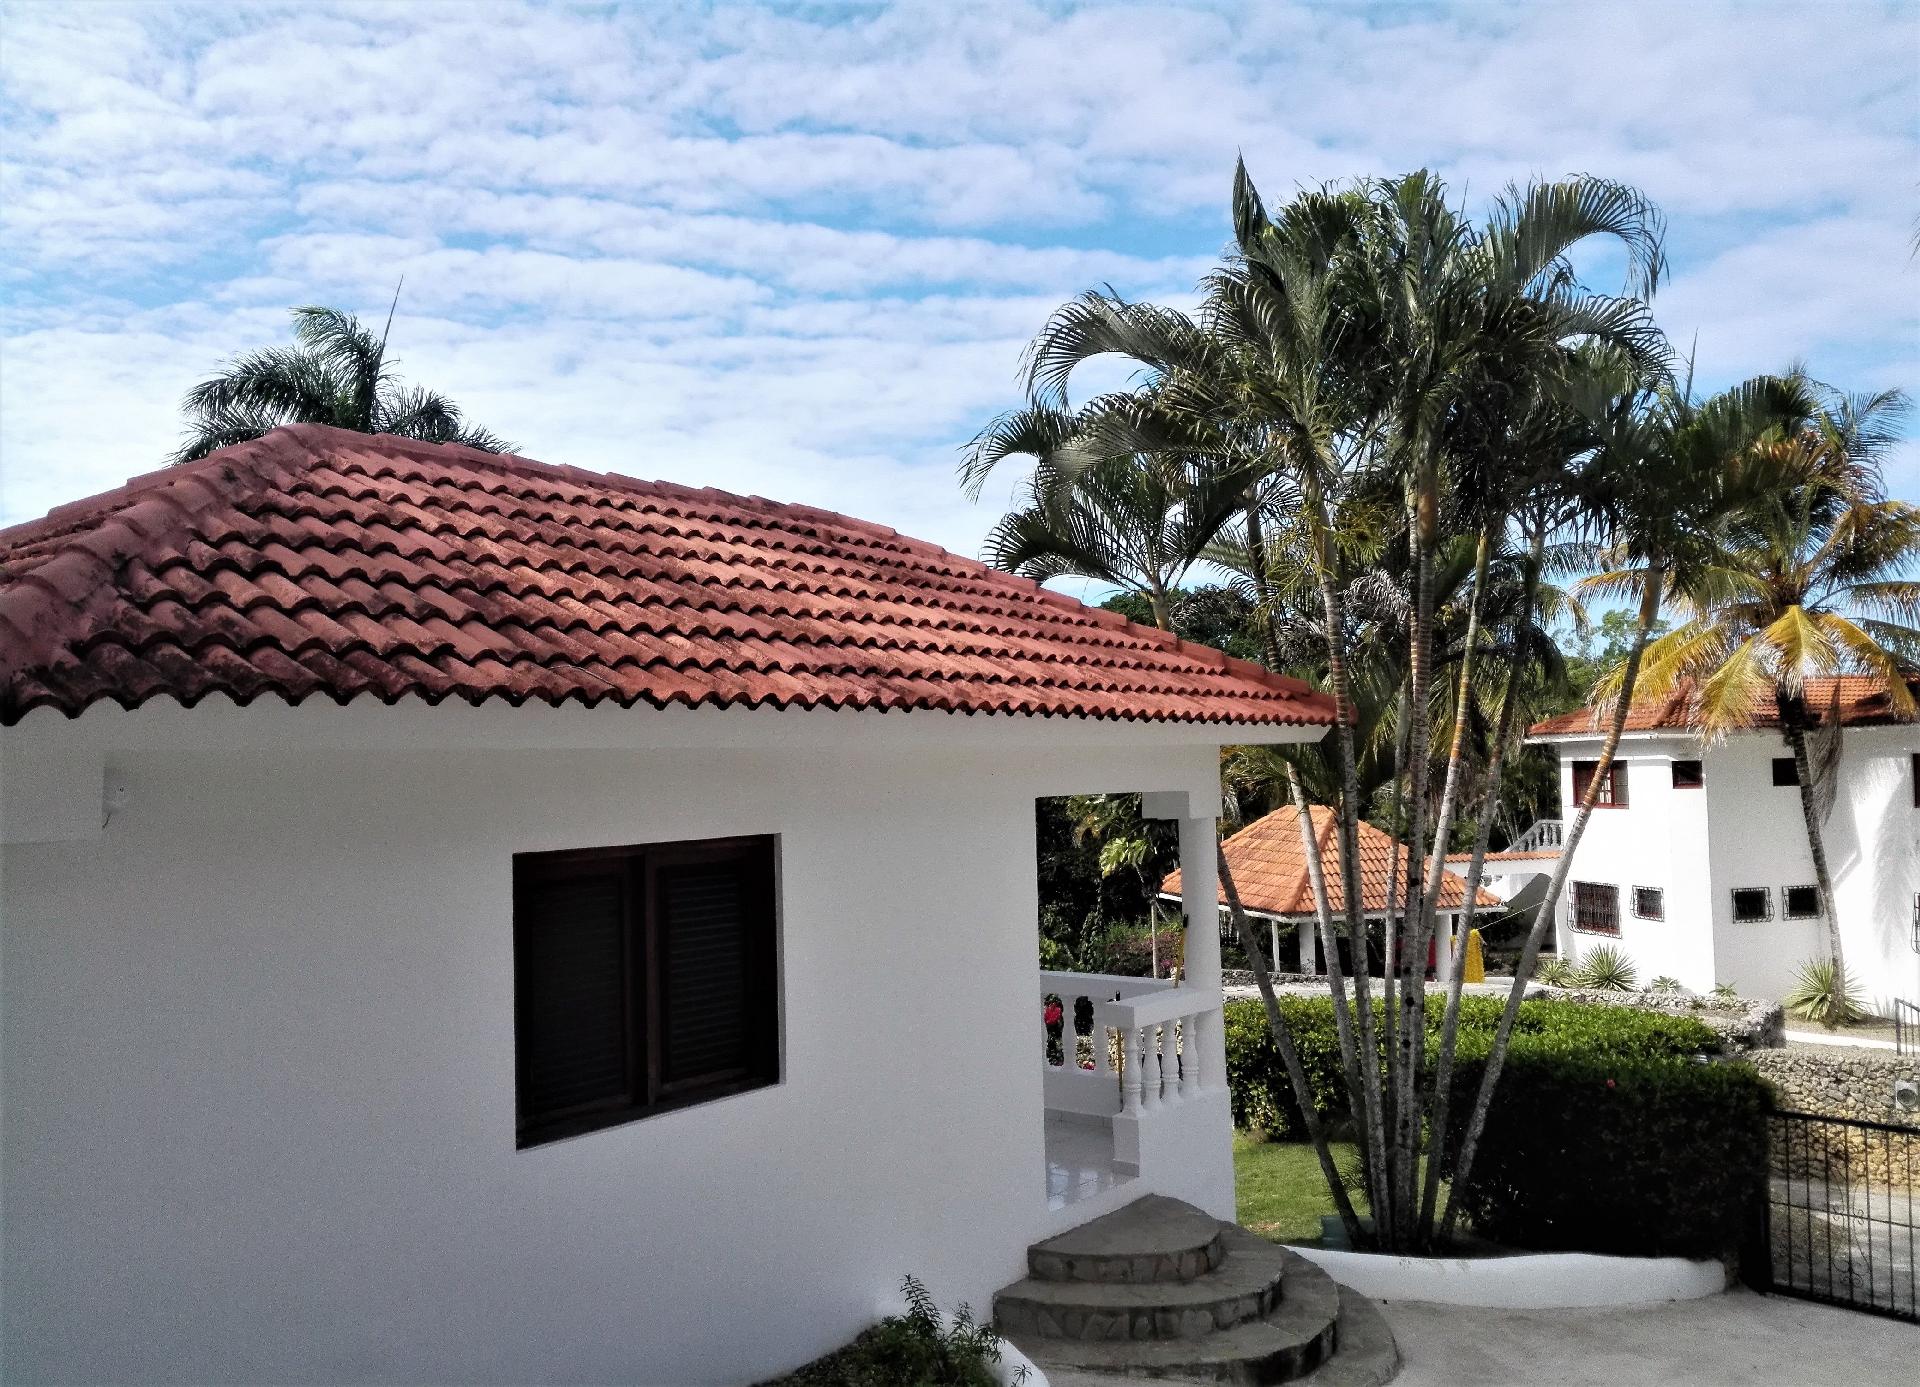 Ferienhaus mit Privatpool für 1 Personen  + 1 Ferienhaus in Mittelamerika und Karibik